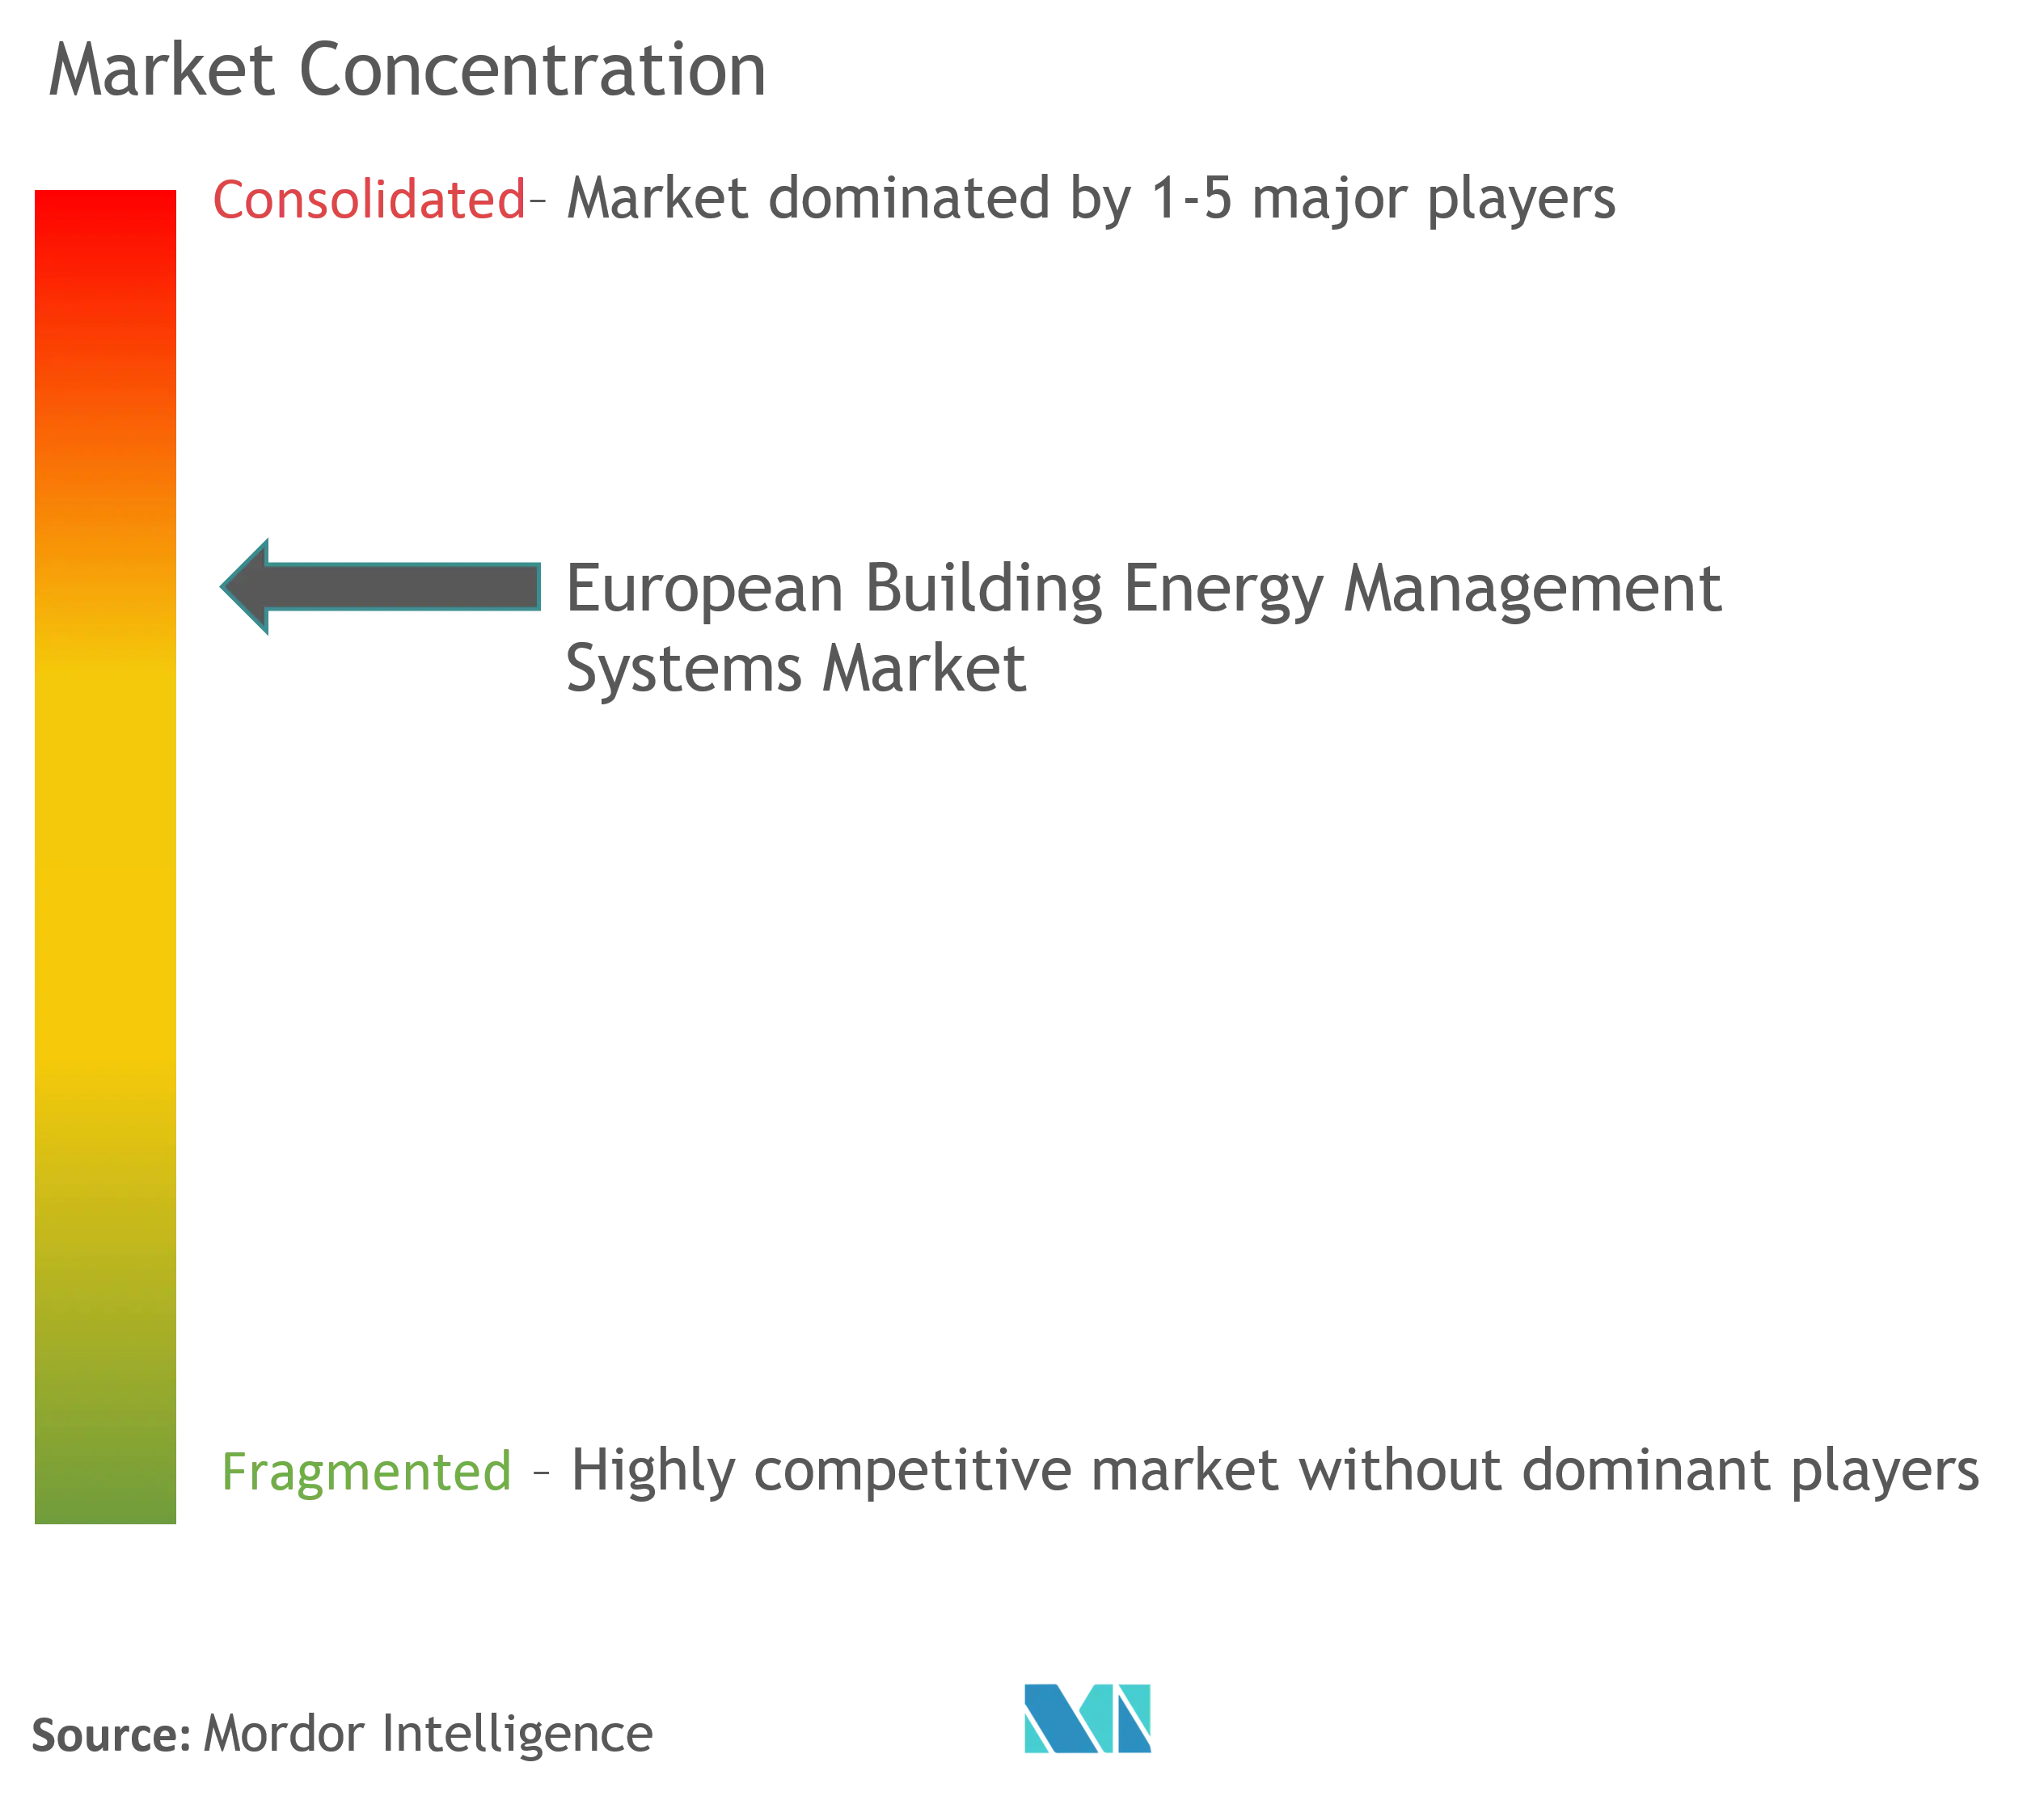 Marktkonzentration für Gebäudeenergiemanagementsysteme in Europa